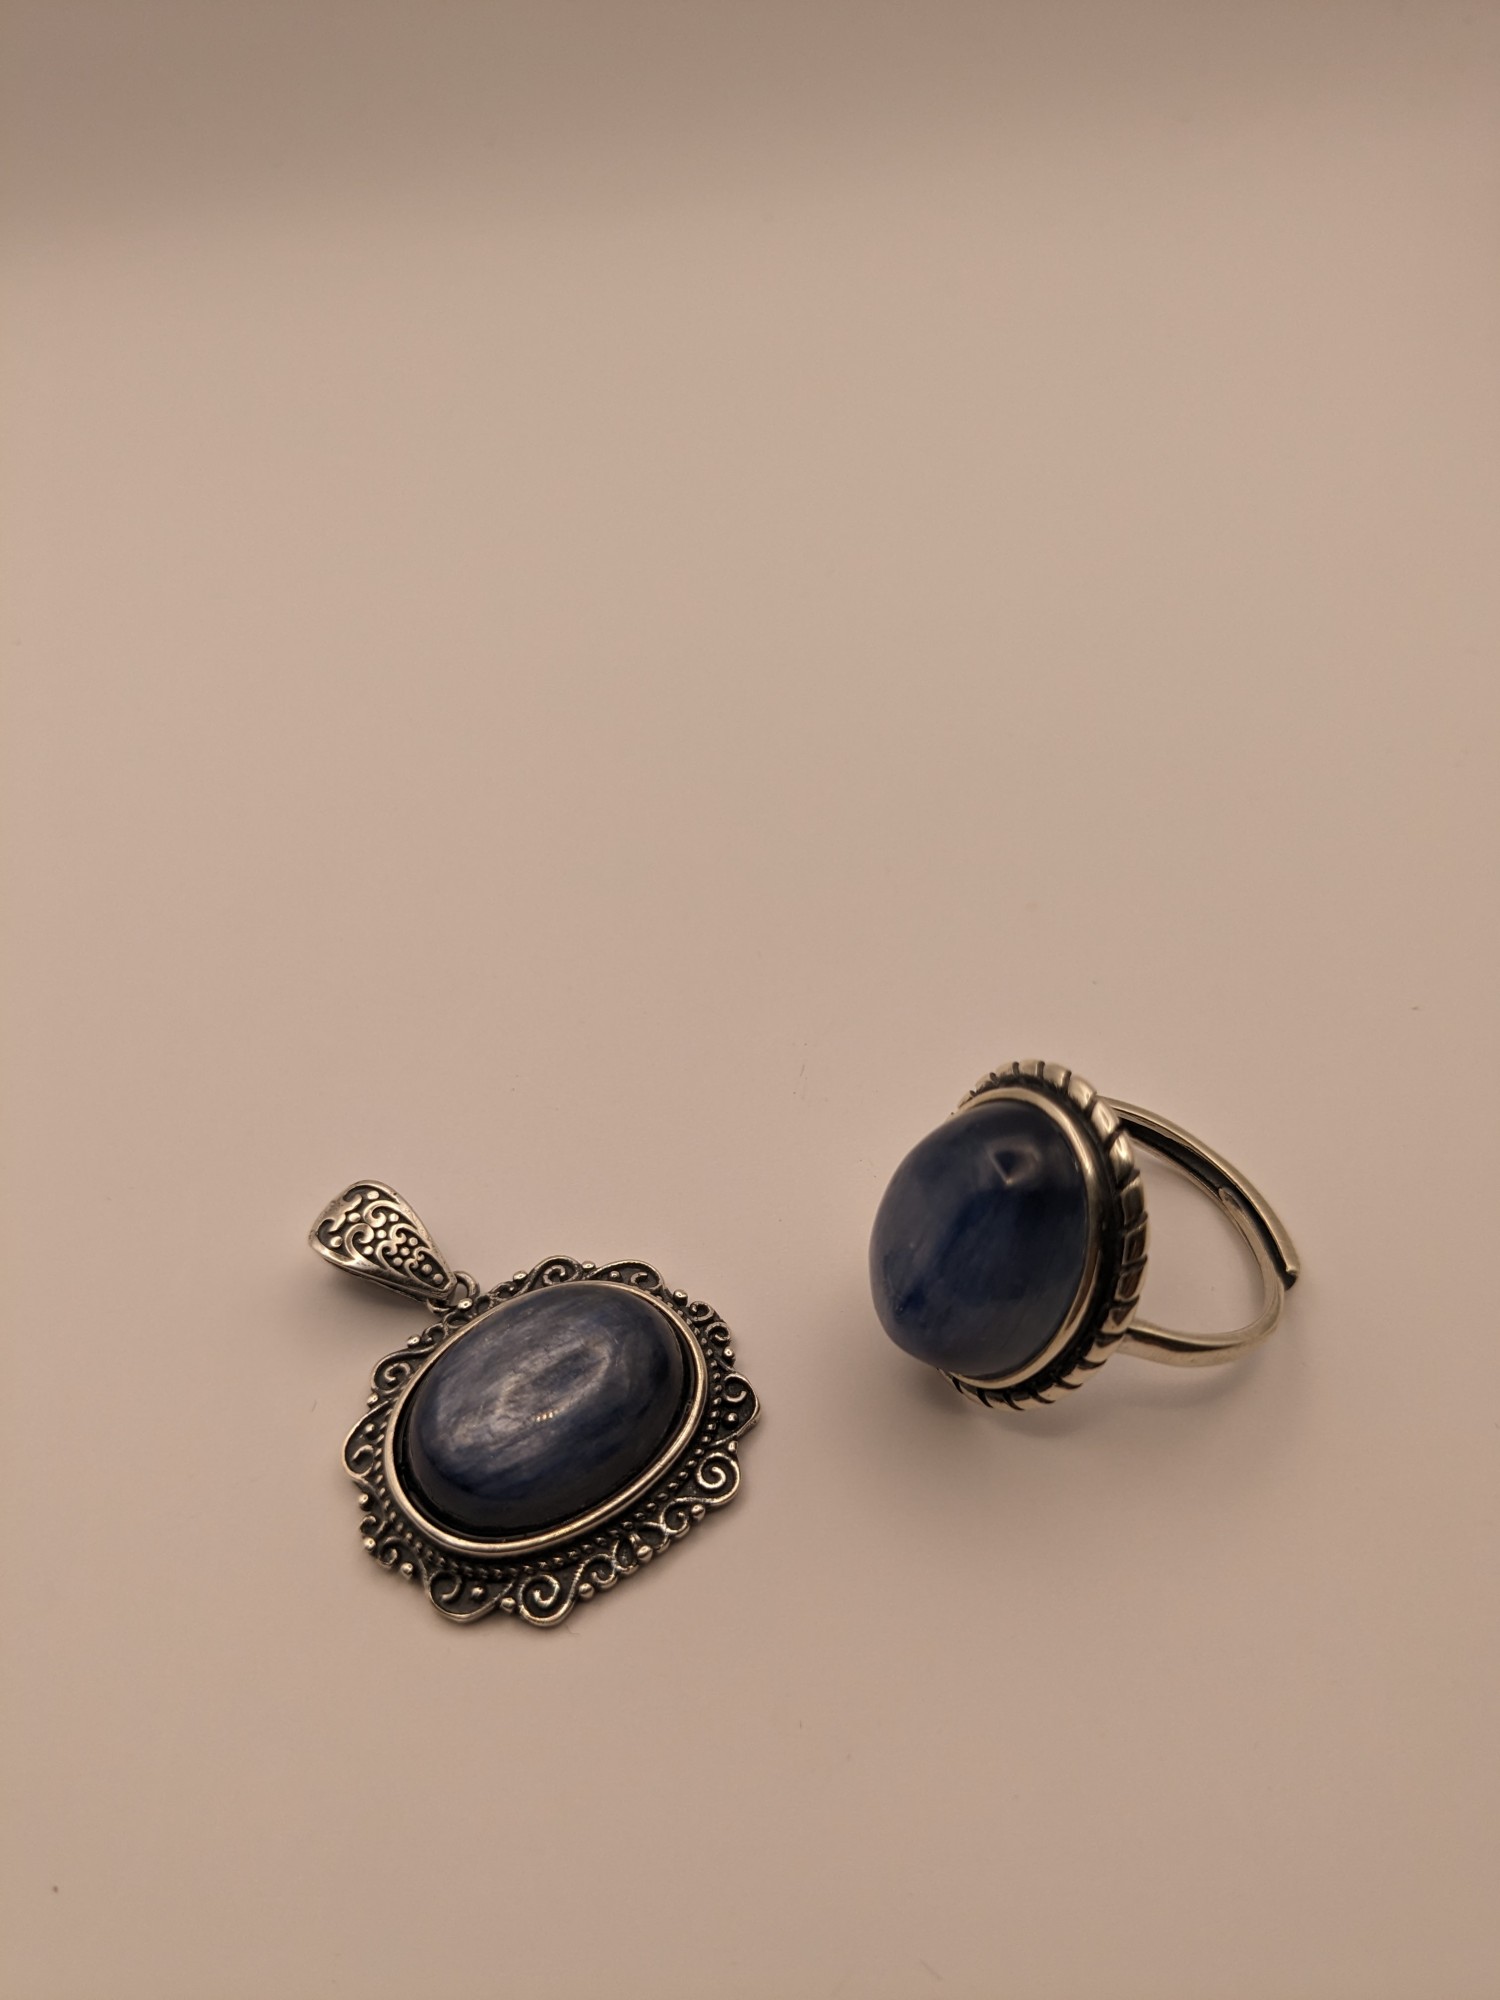 藍晶石~項墜、戒子.925純銀包台 套組 編號:G24-2-6-2497-1748